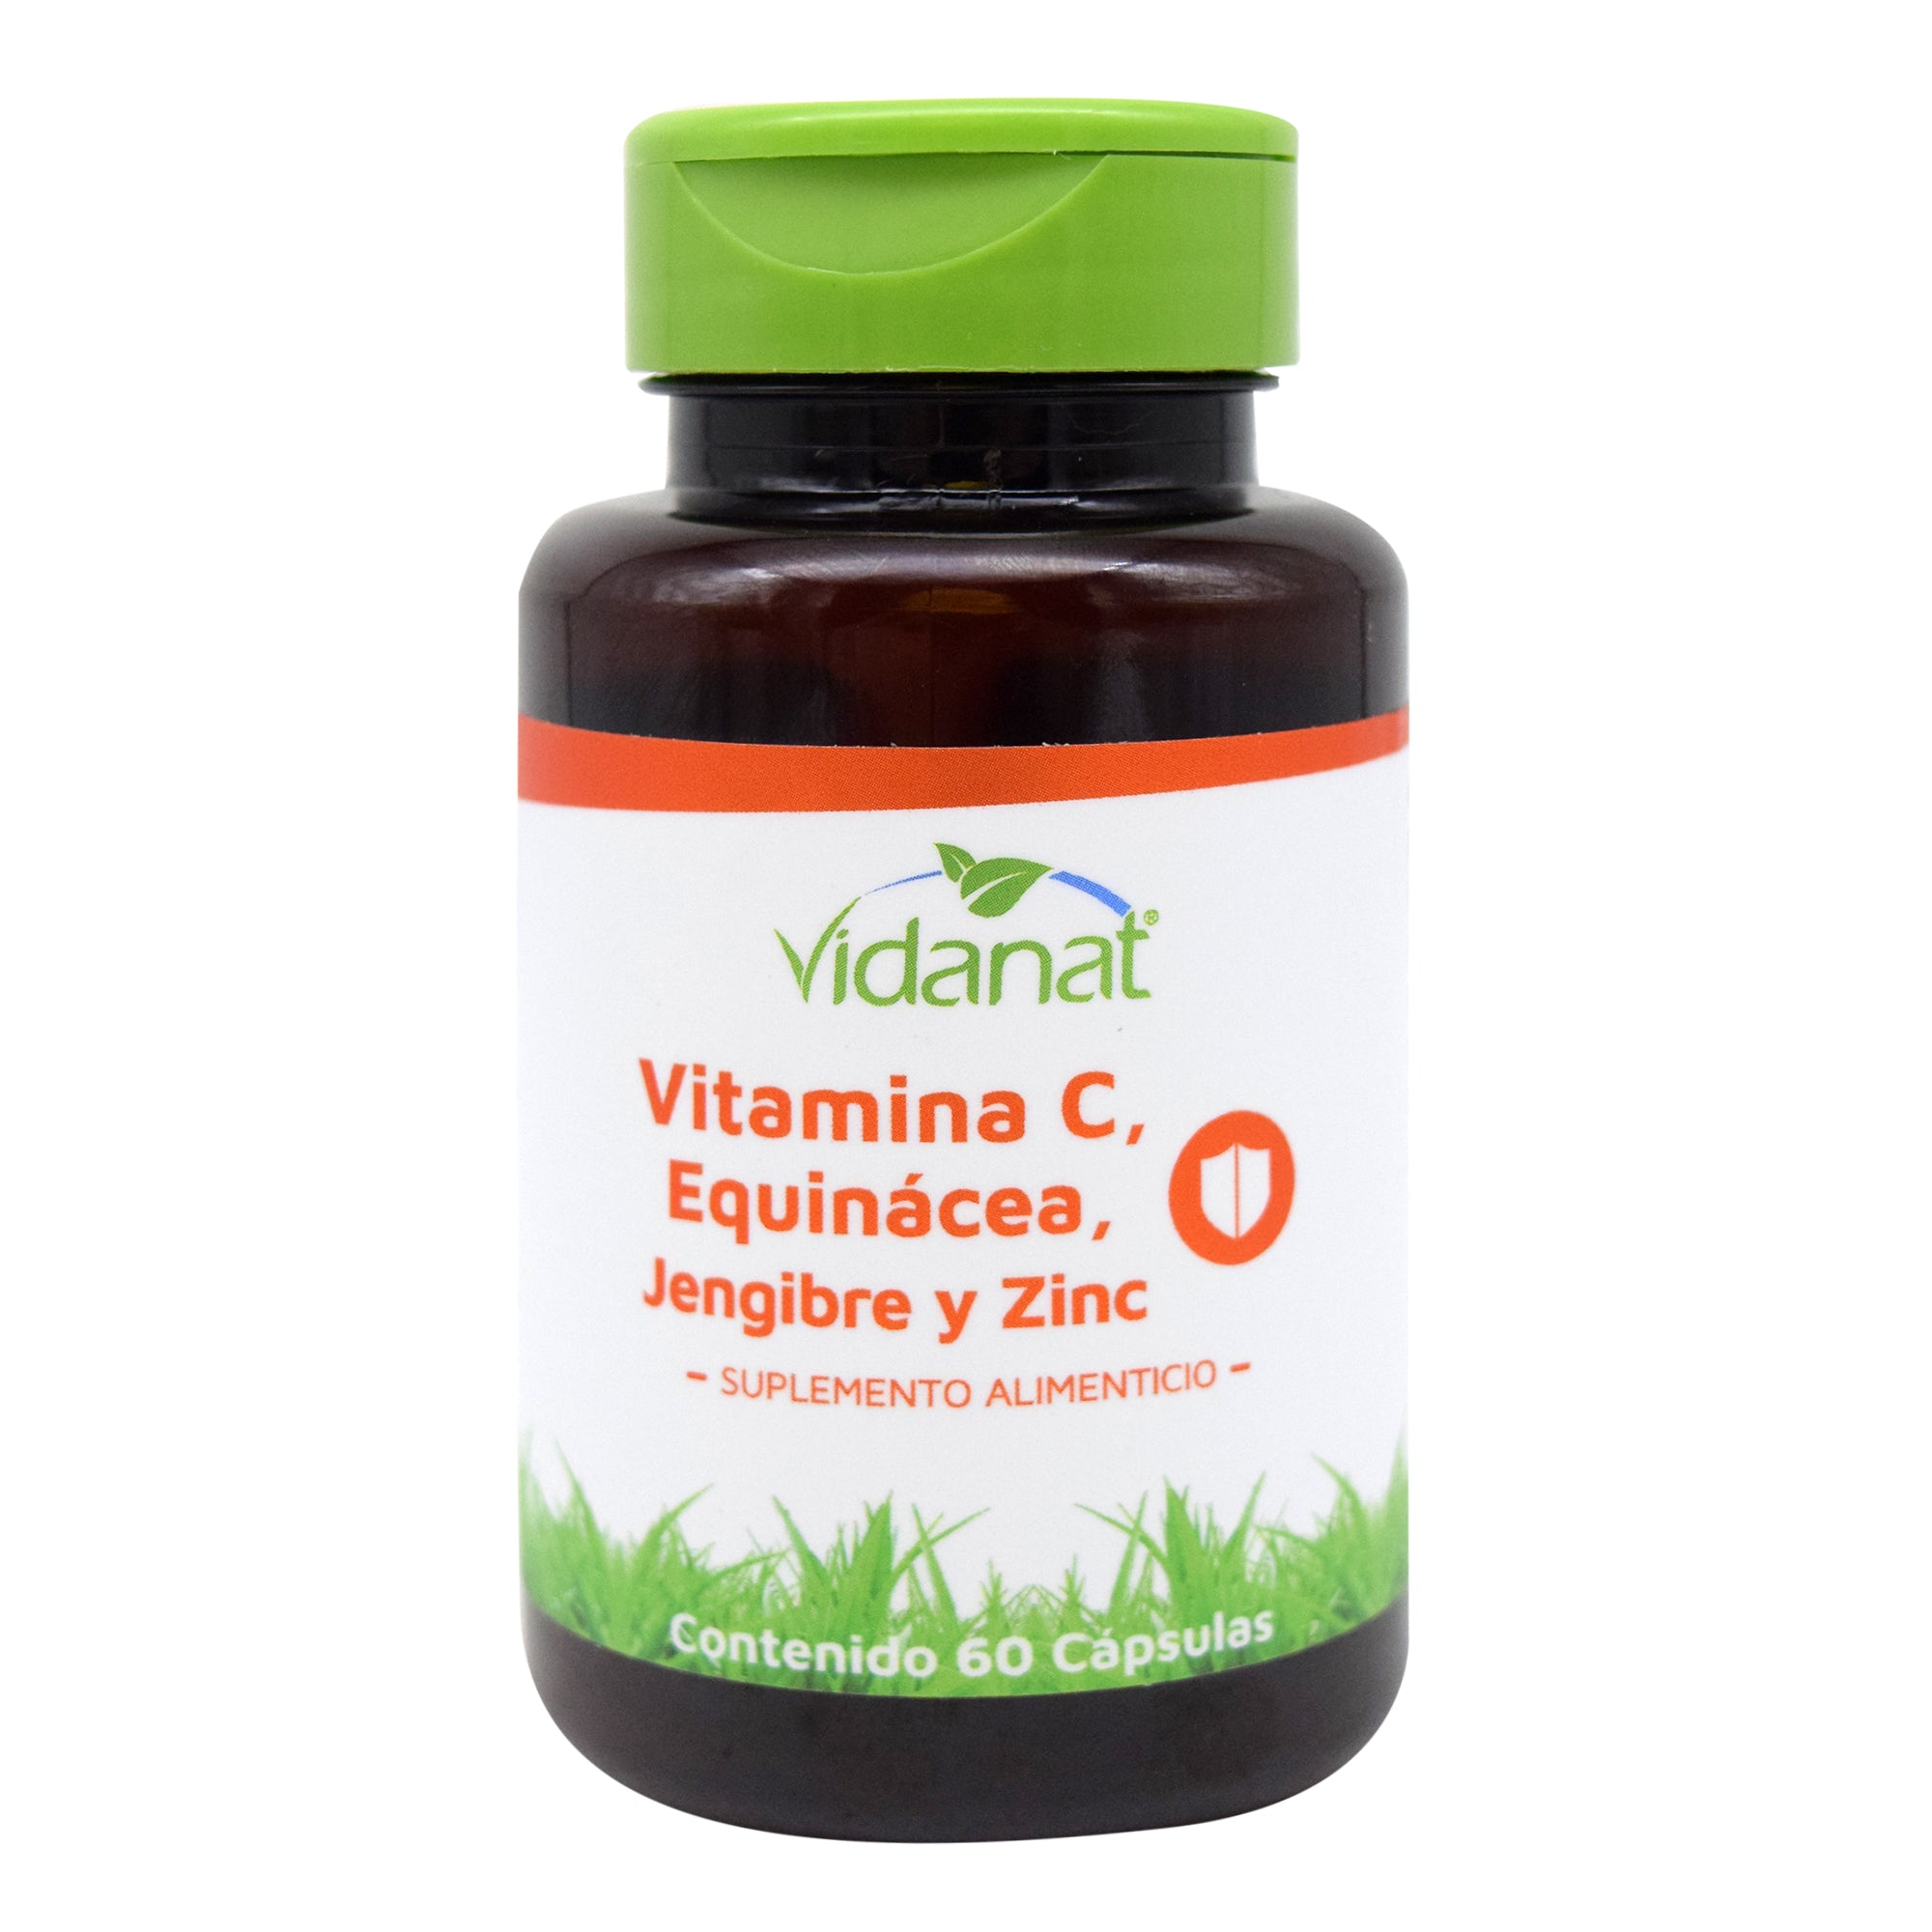 Vitamina c equinacea jengibre y zinc 60 cap